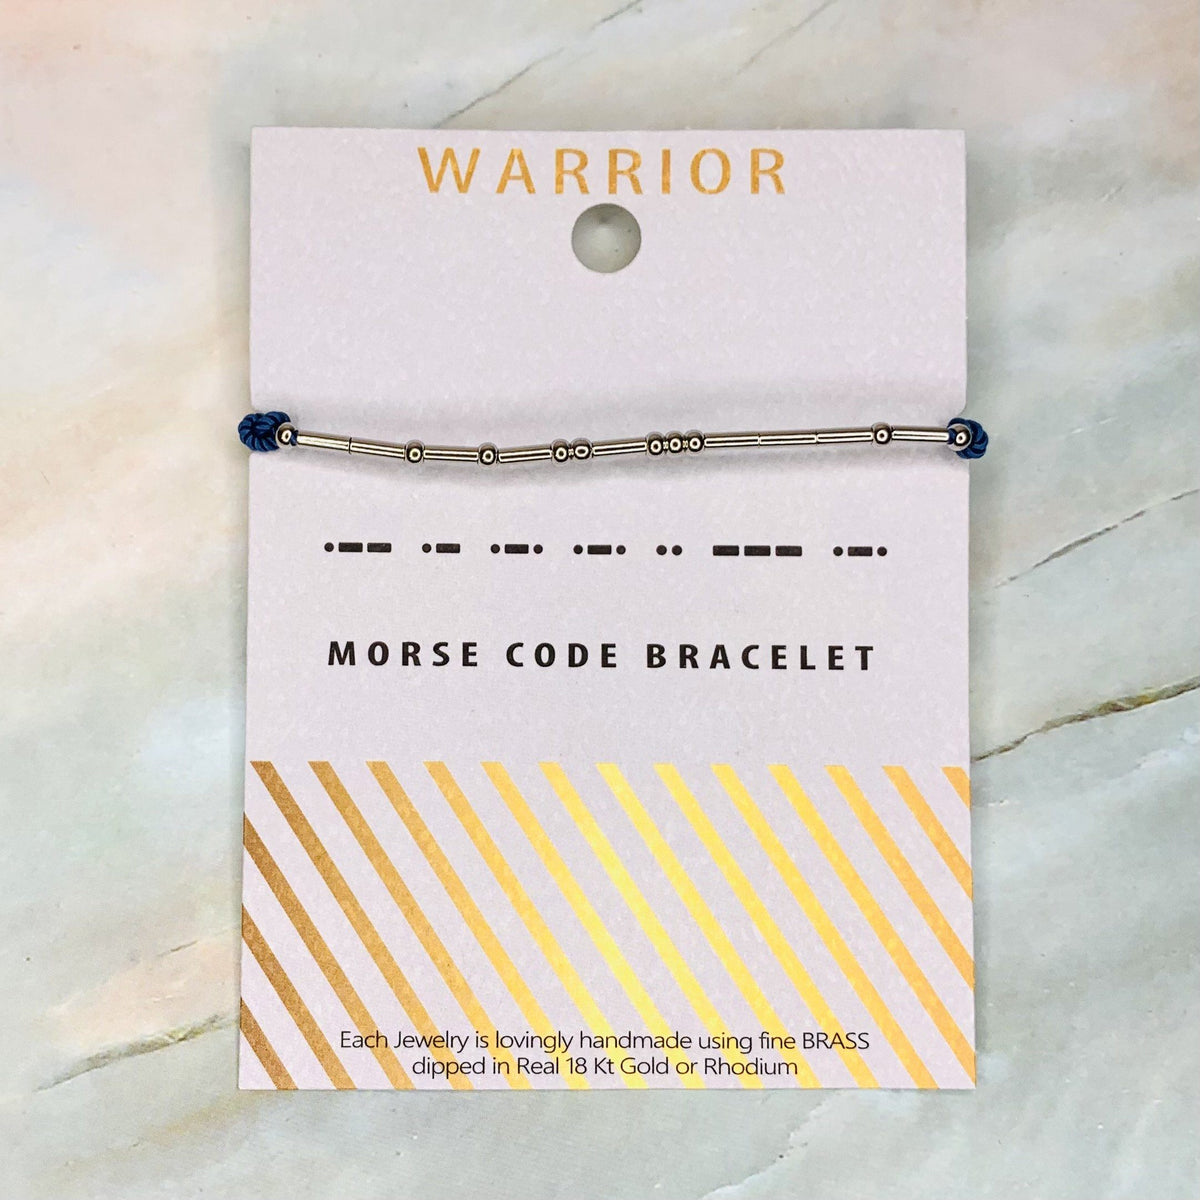 Morse Code Bracelet Jewelry Lauren-Spencer Warrior 